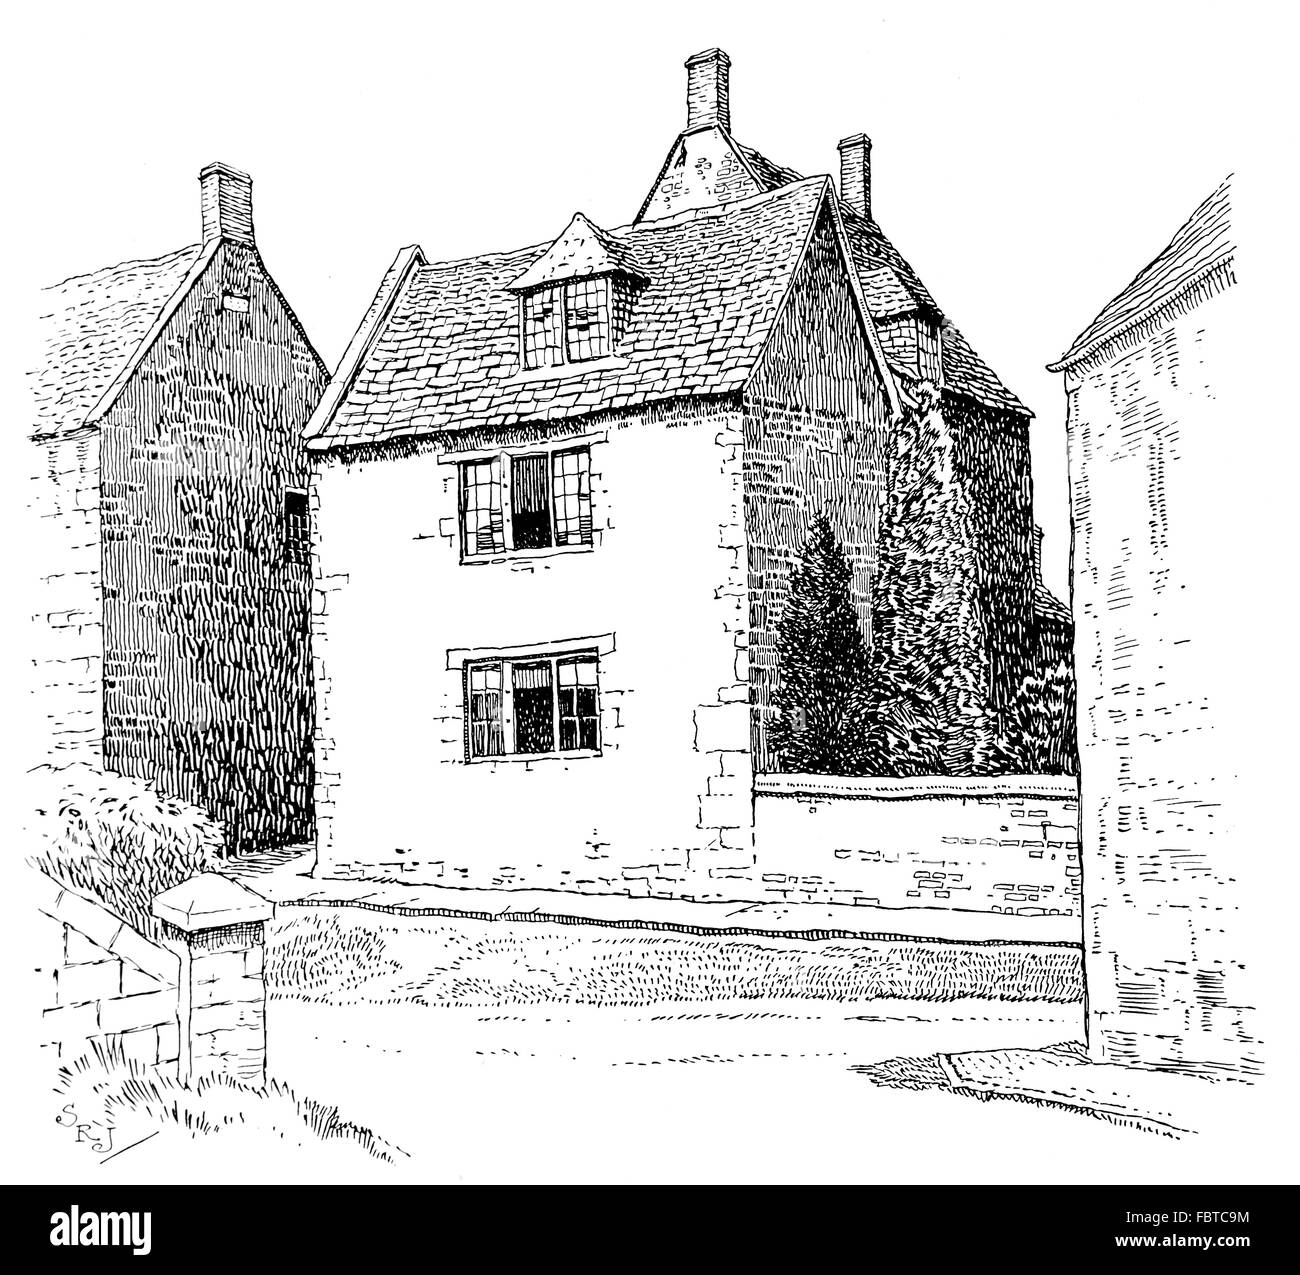 Regno Unito, Inghilterra, Northamptonshire, Ashley village, vecchia casa con finestre dormer nel tetto di tegole, nel 1911, illustrazione di linea Foto Stock